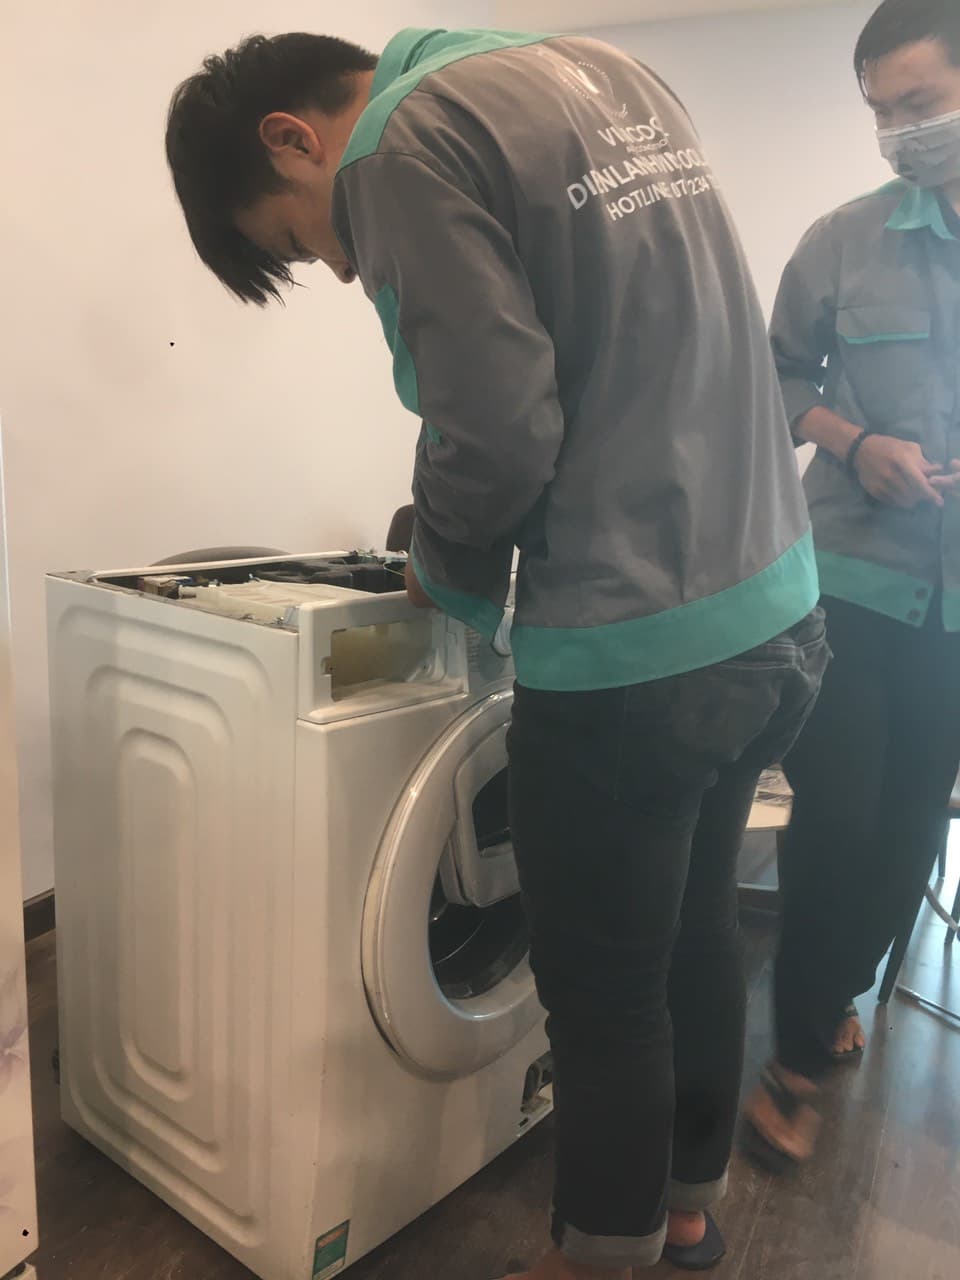 Vệ sinh máy giặt quận Thủ Đức có mặt trong 30 phút, chuyên nghiệp và kỹ lưỡng